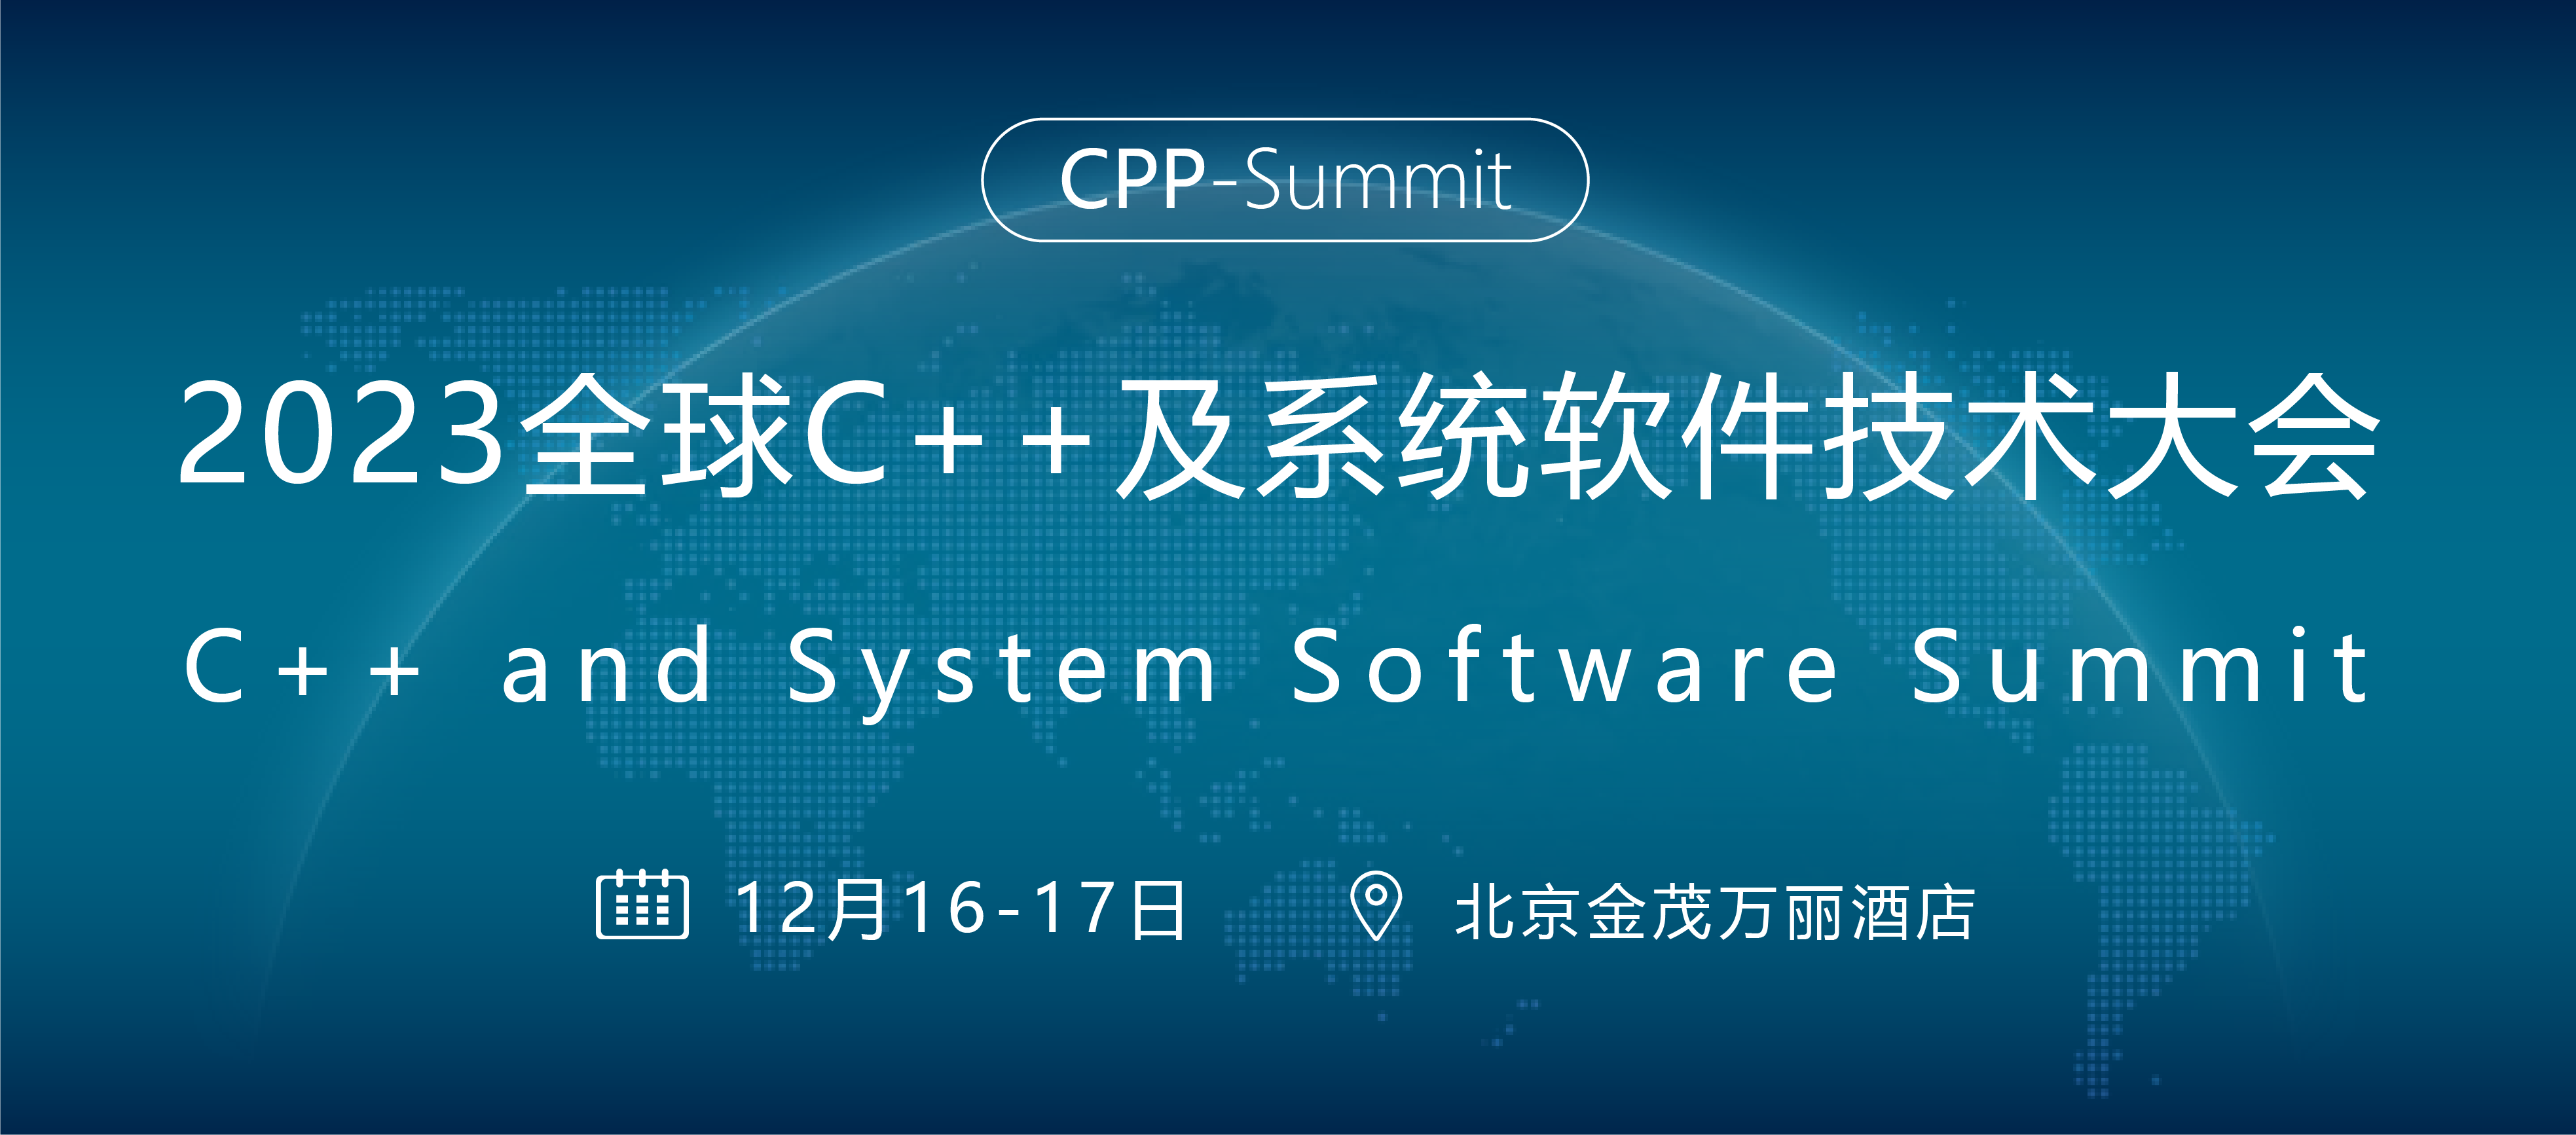 全球C++及系统软件技术大会